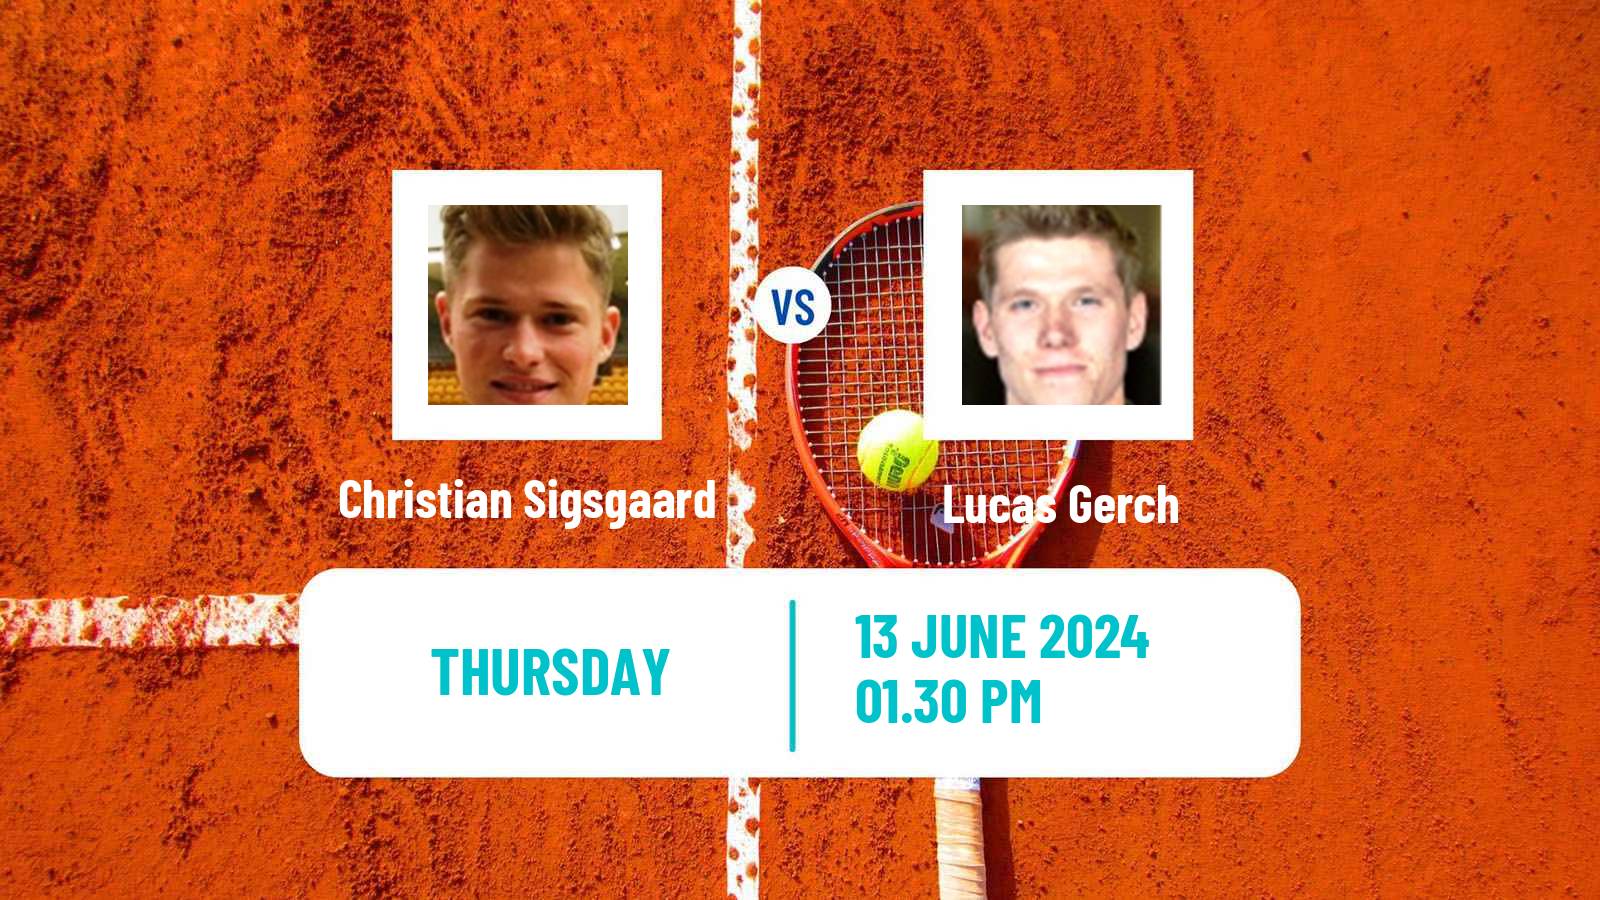 Tennis ITF M25 Aarhus Men Christian Sigsgaard - Lucas Gerch